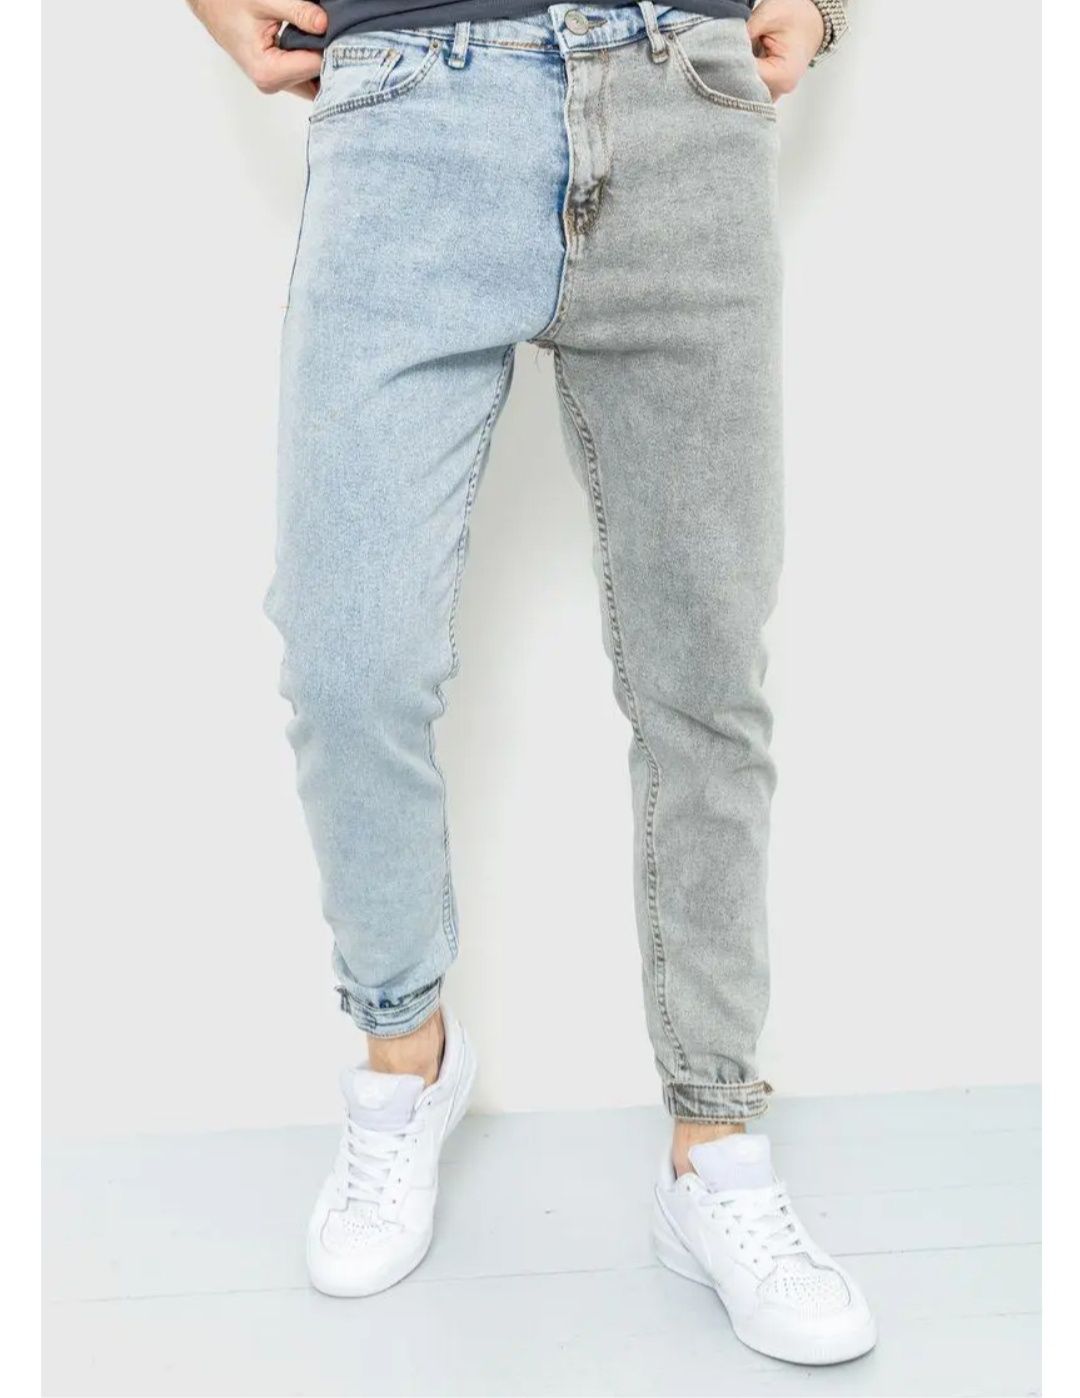 Дуже круті джинси чоловічіі